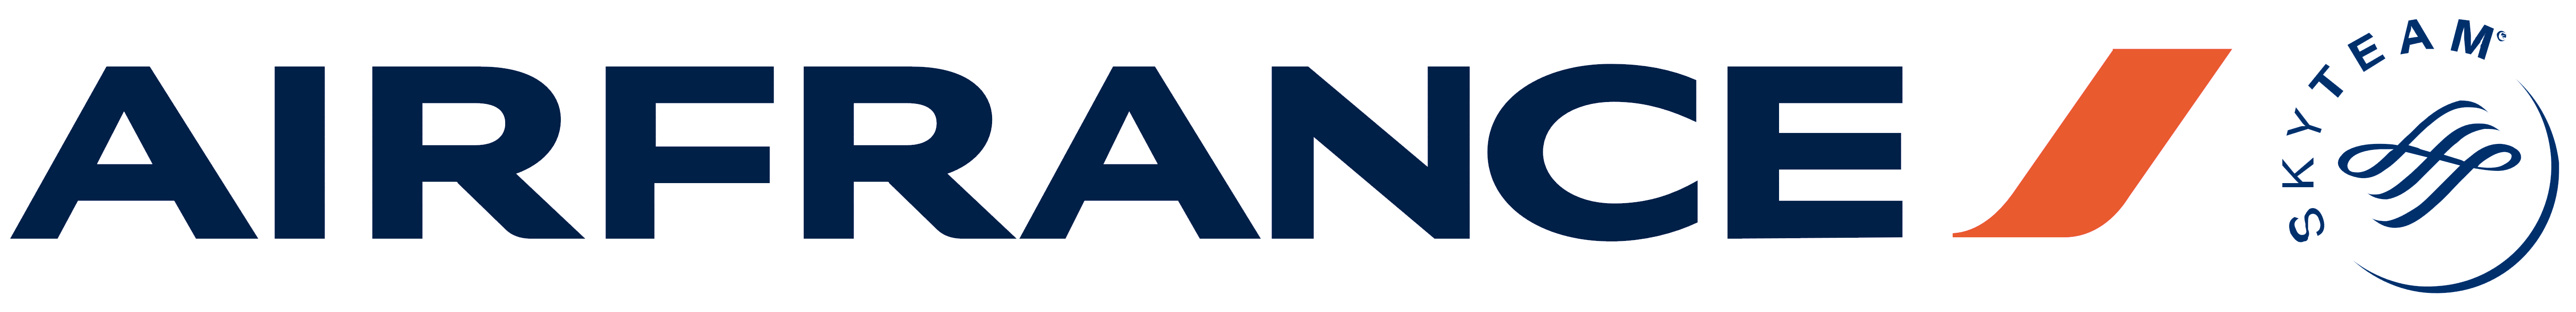 Air_France_logo